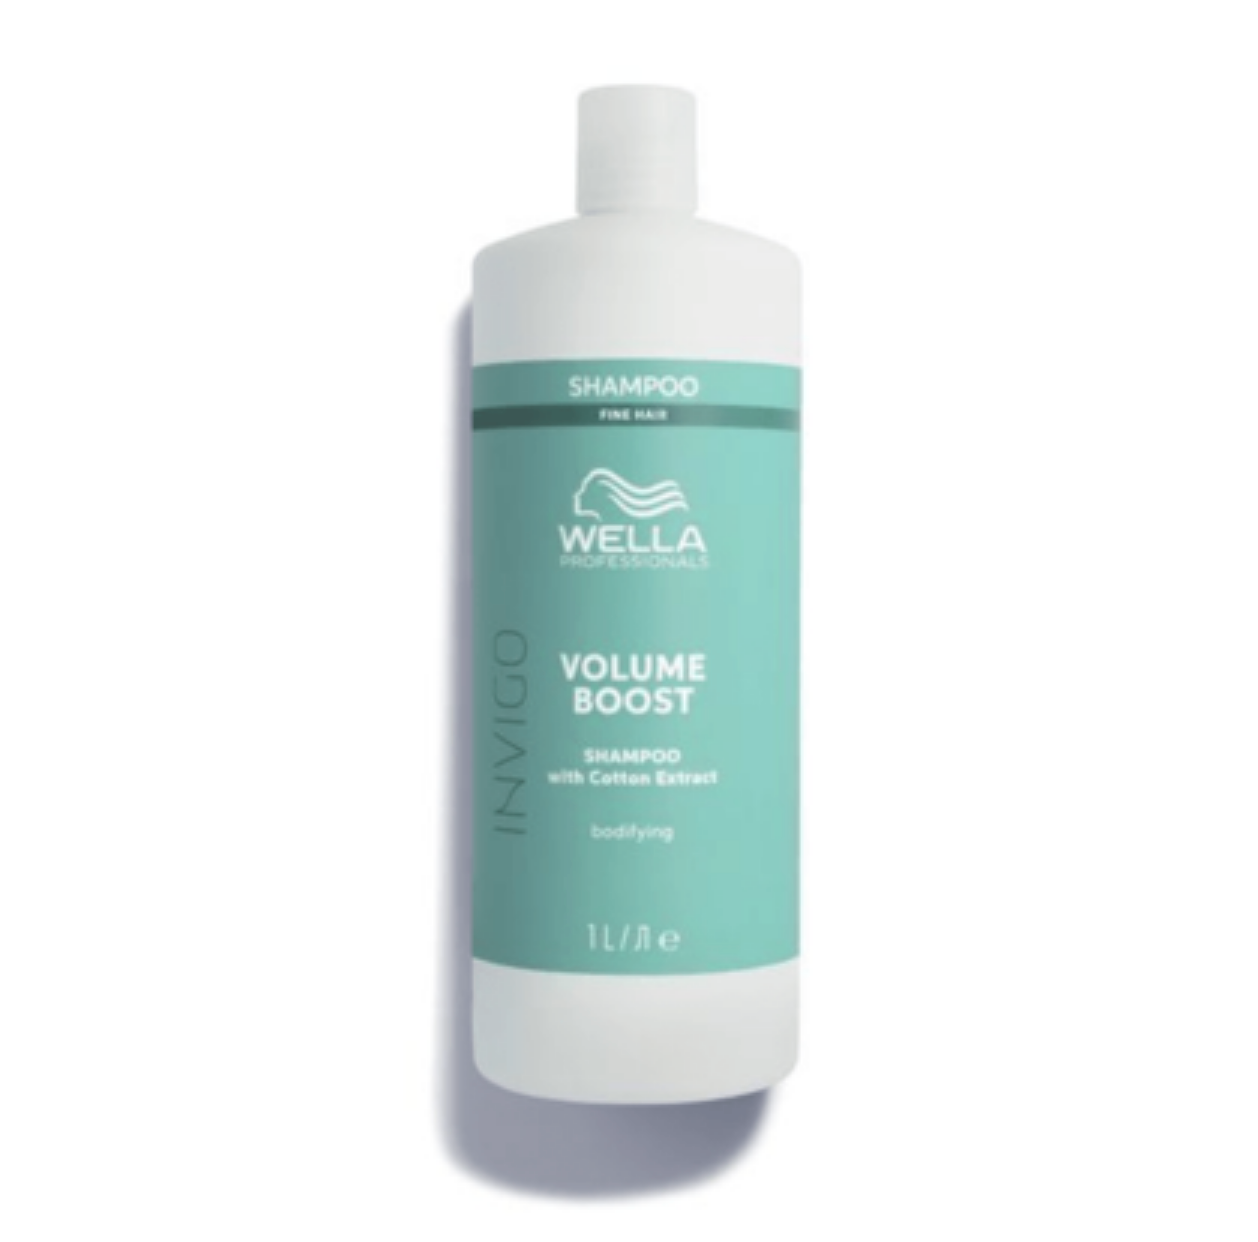 Wella Invigo Volume Boost Shampoo 1litre